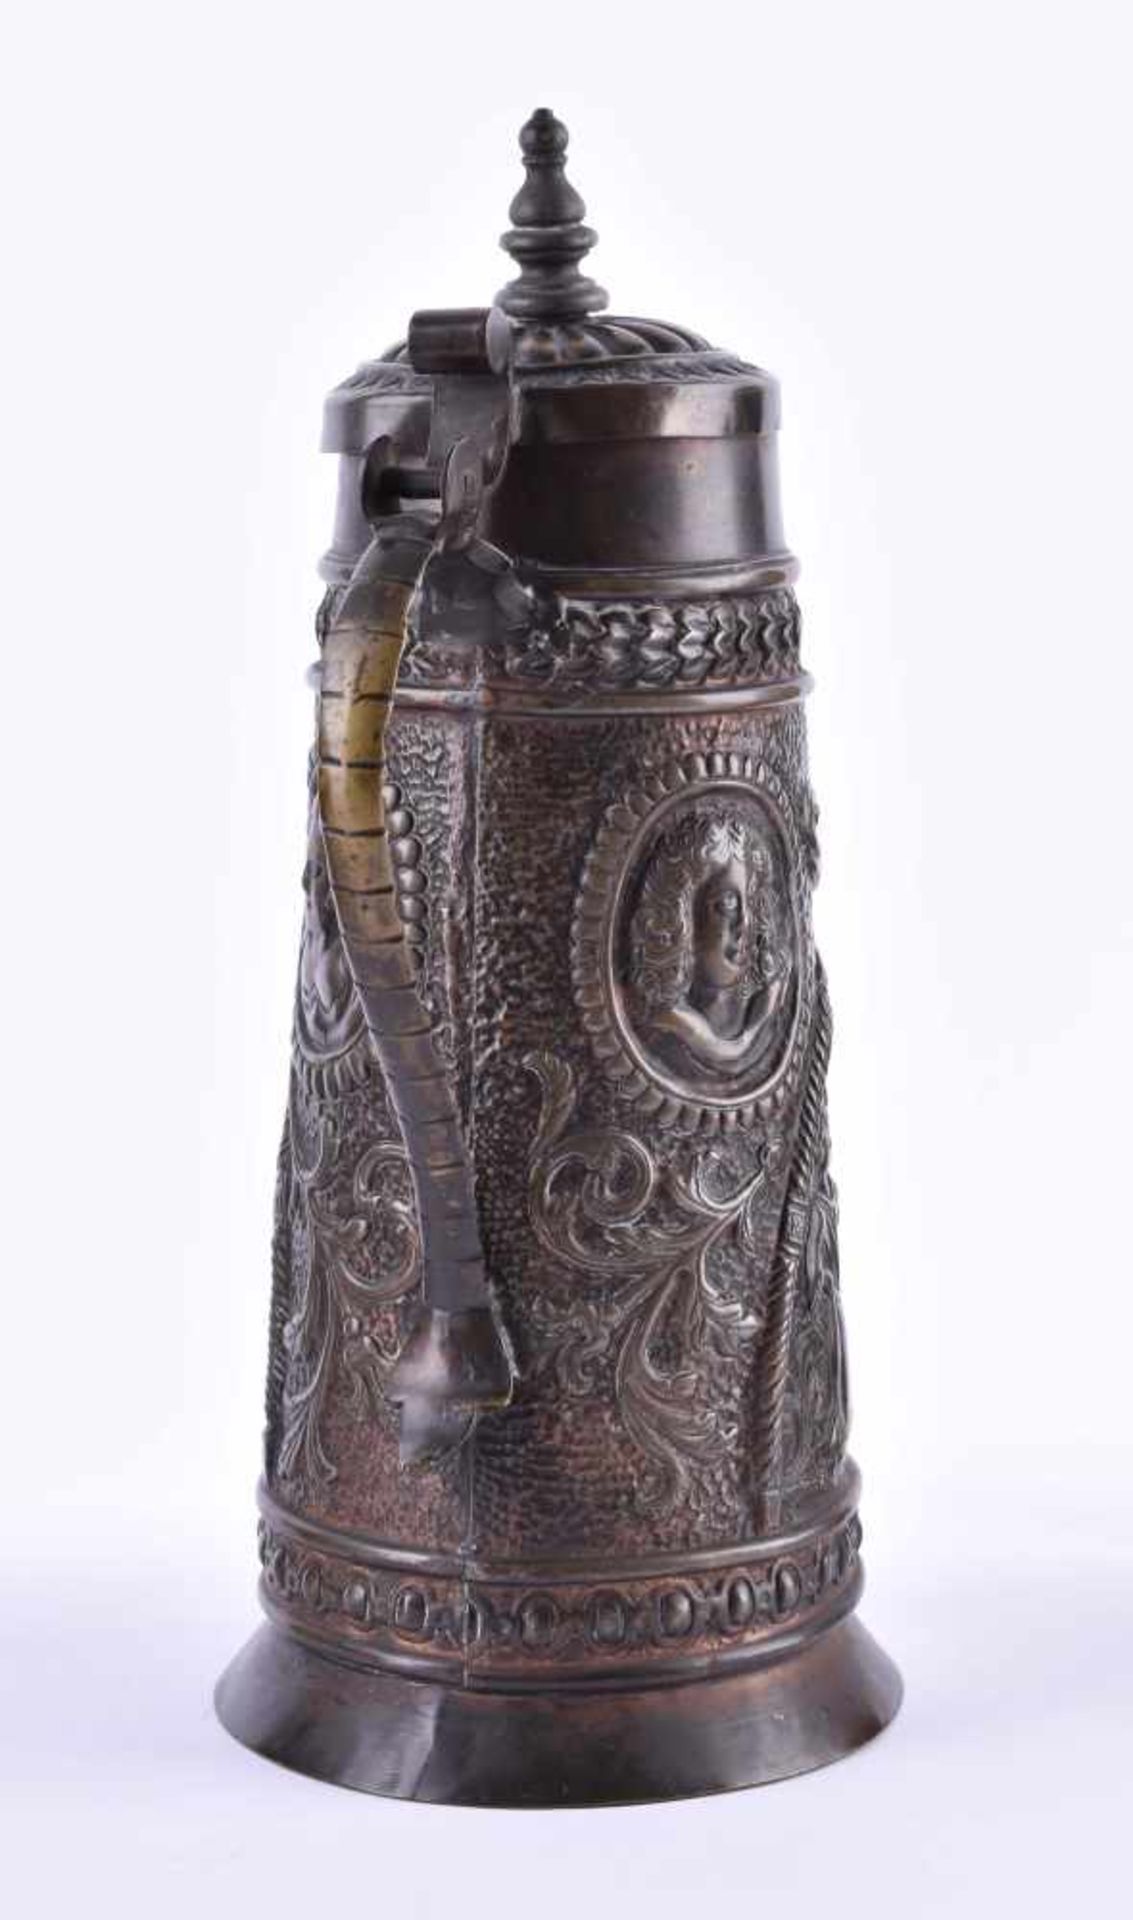 Barock-Henkelkrug um 1740Bronze, H: 29,5 cmBaroque handle jug around 1740bronze, height: 29.5 cm - Bild 4 aus 5